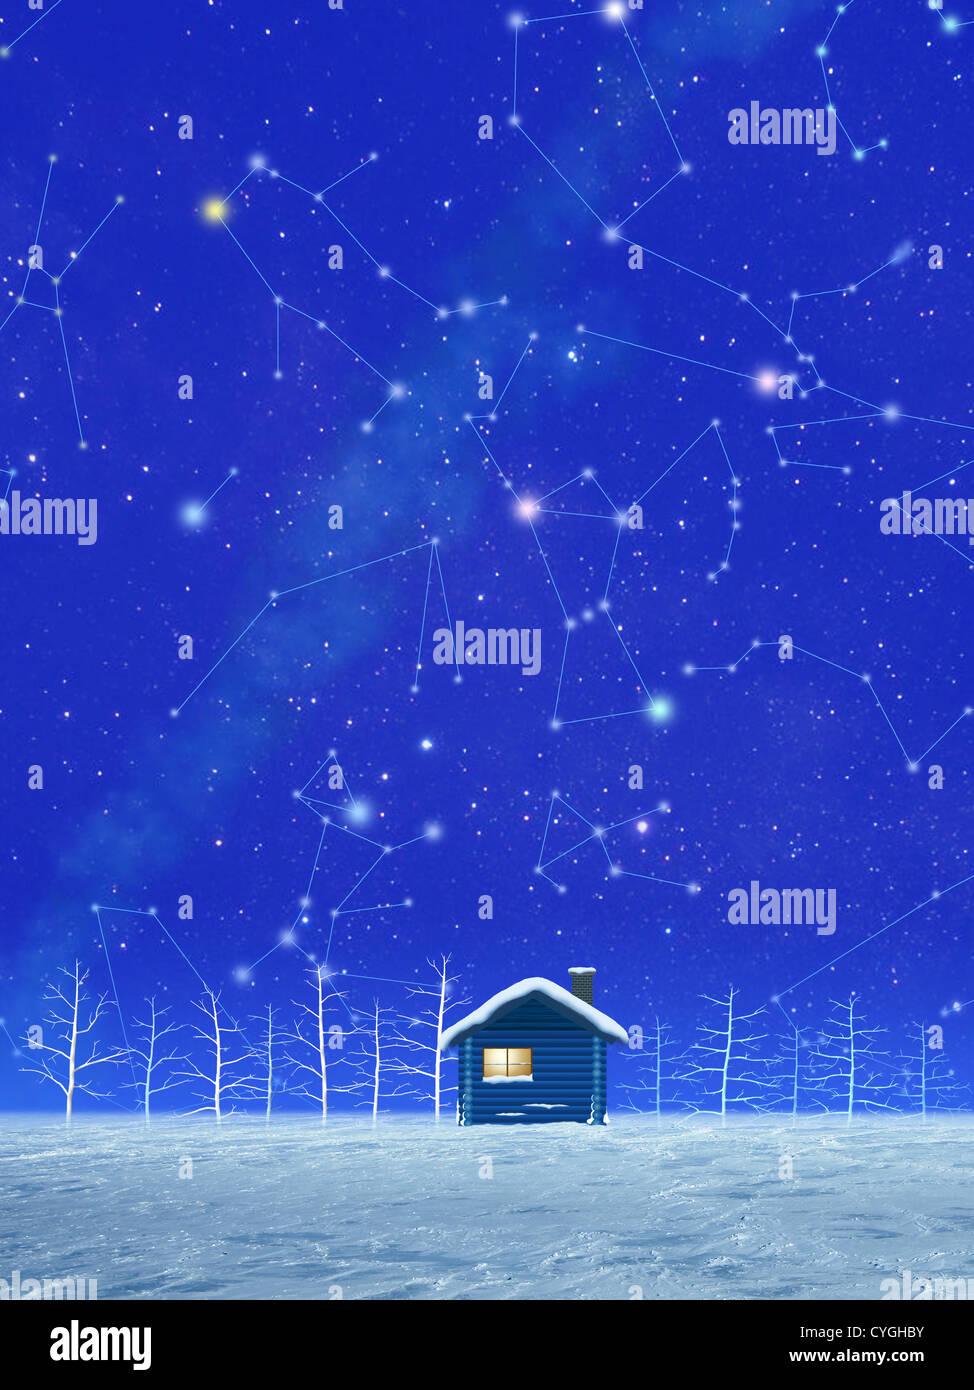 Illustration de la neige et de constellations en hiver Banque D'Images